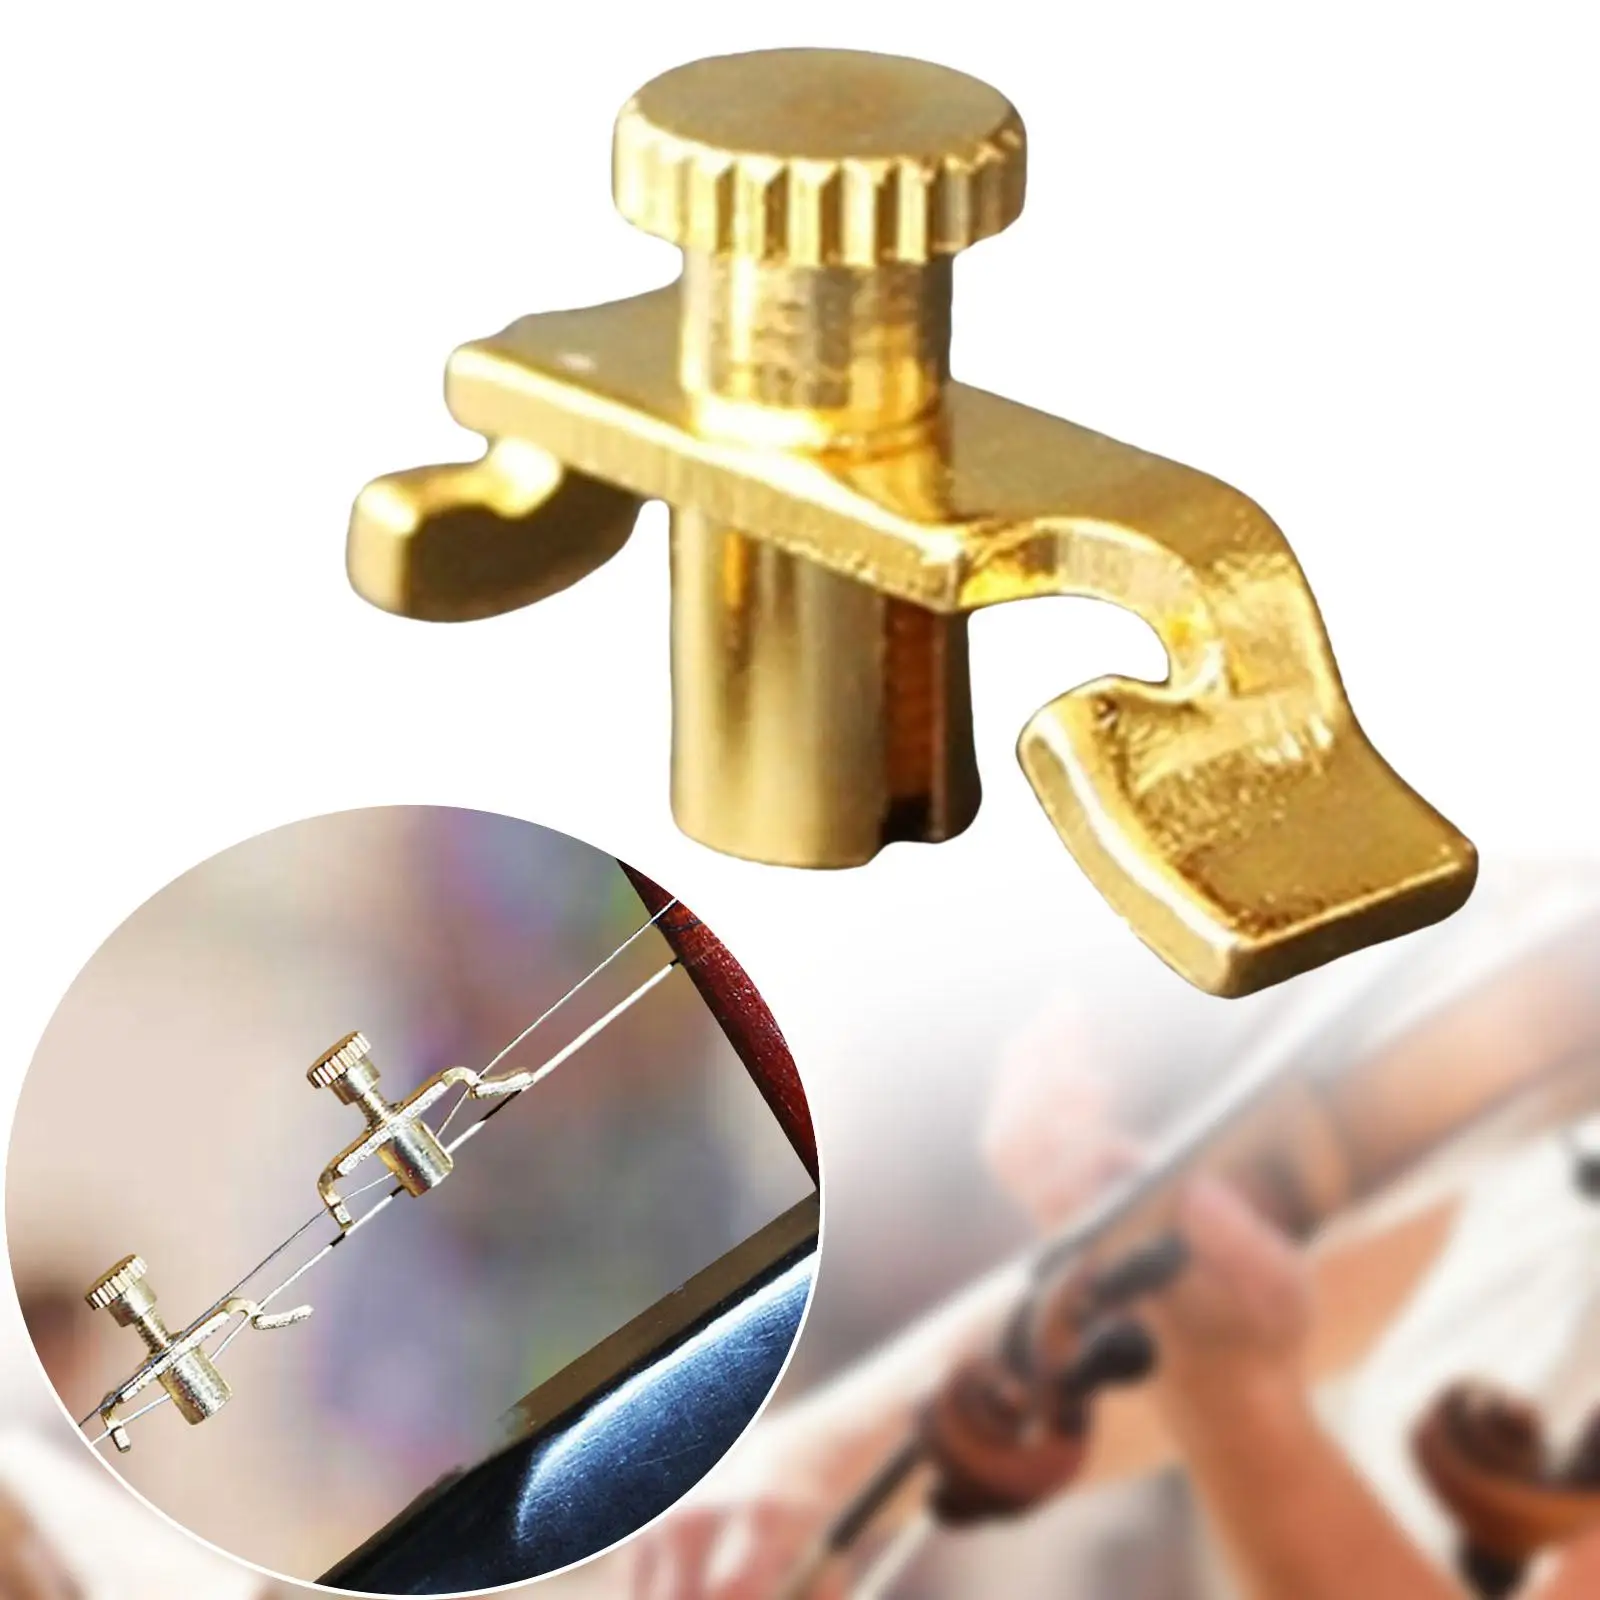 

Металлический инструмент для точной настройки Urheen, аксессуары для музыкальных инструментов, классические аксессуары для музыкальных инструментов Erhu